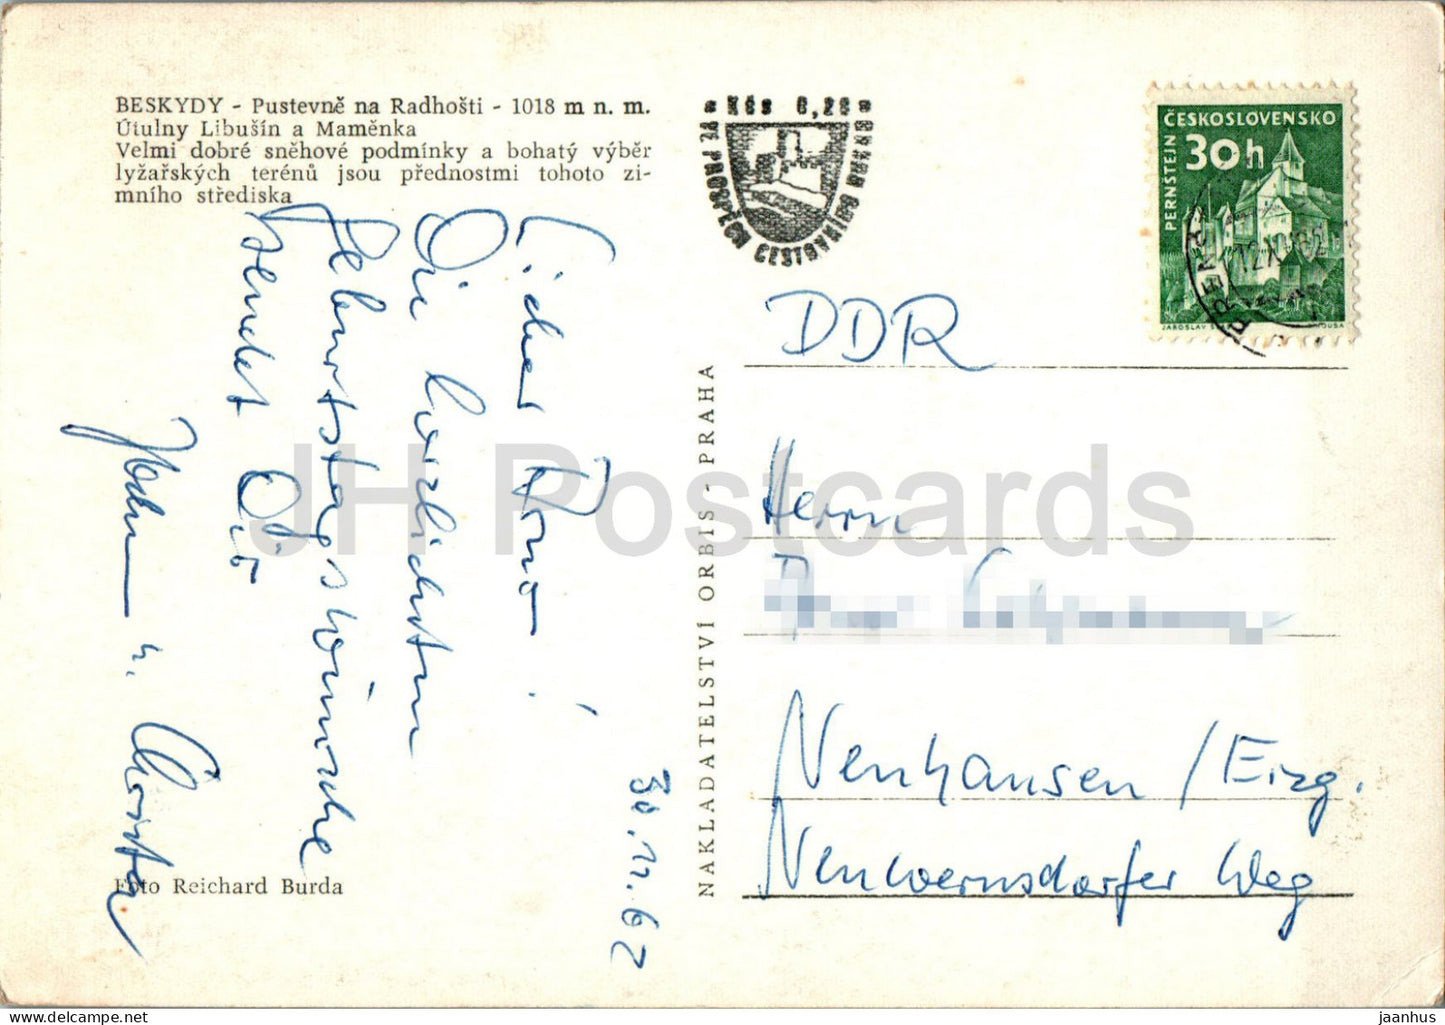 Beskiden - Pustevne na Radhosti - Hermitageon Radhosti - 1962 - Tschechische Republik - Tschechoslowakei - gebraucht